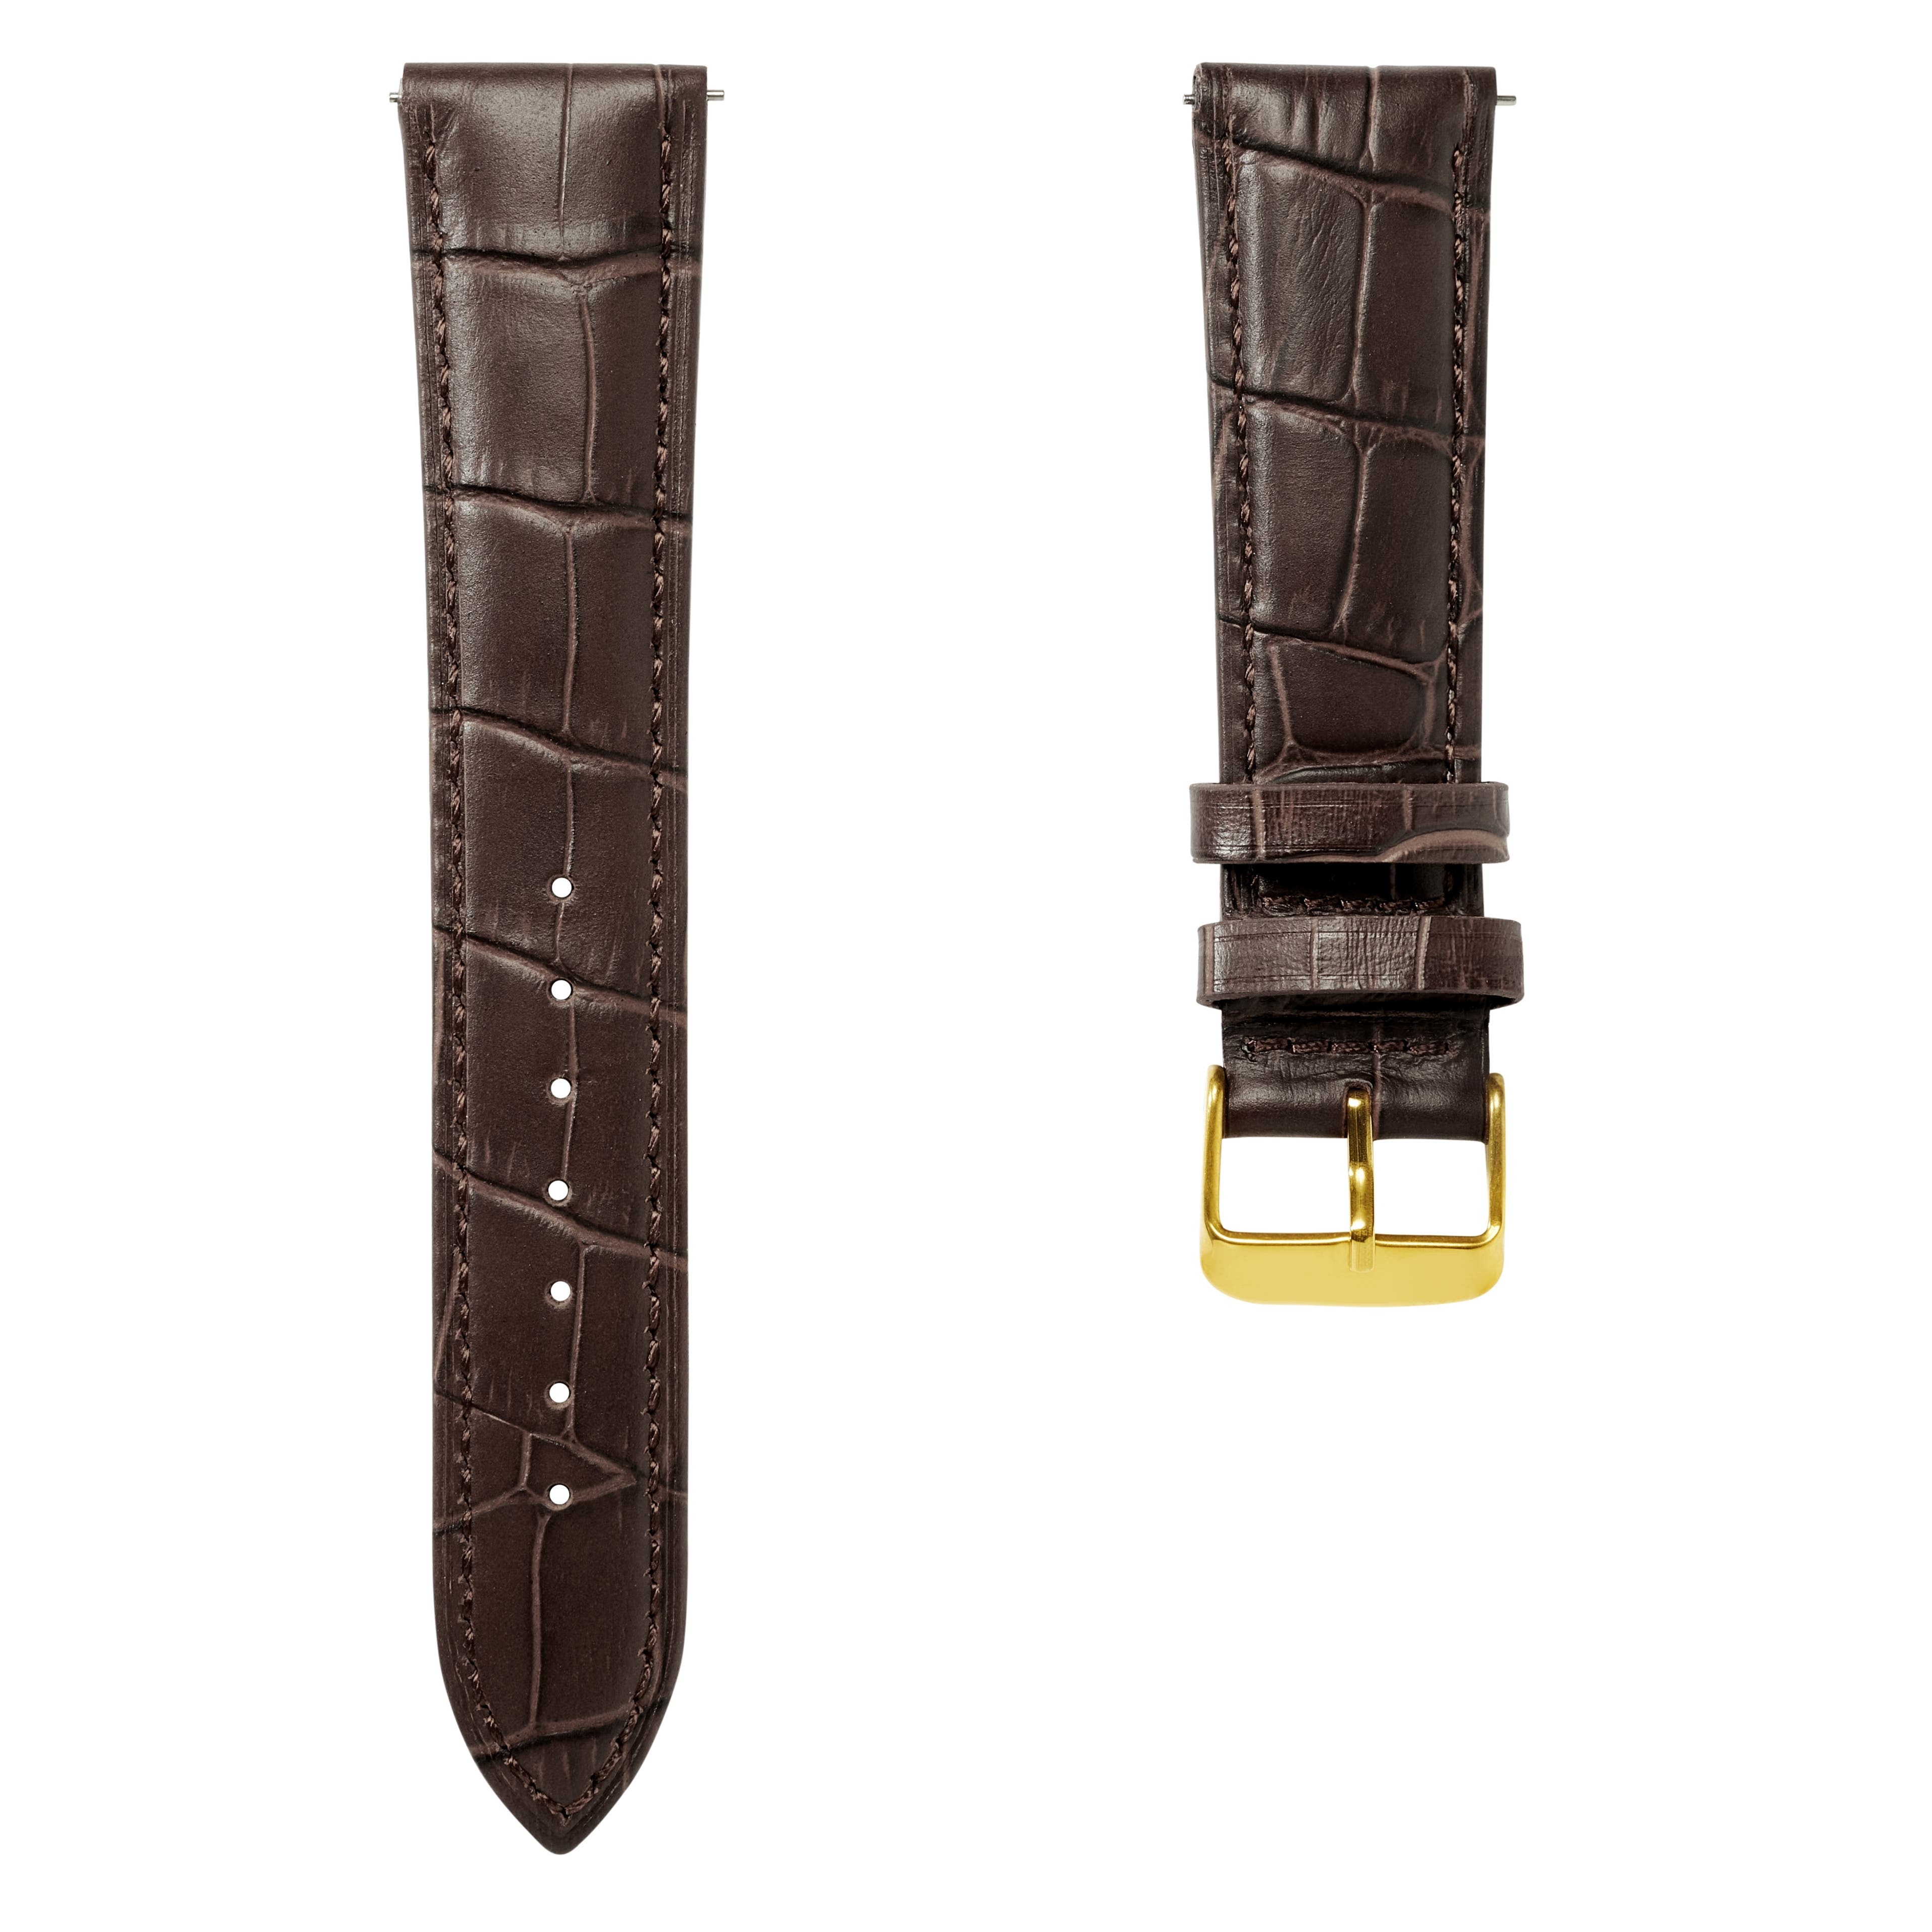  Bracelet de montre en cuir marron foncé à motif crocodile avec boucle couleur or et système d'attache rapide – 22 mm